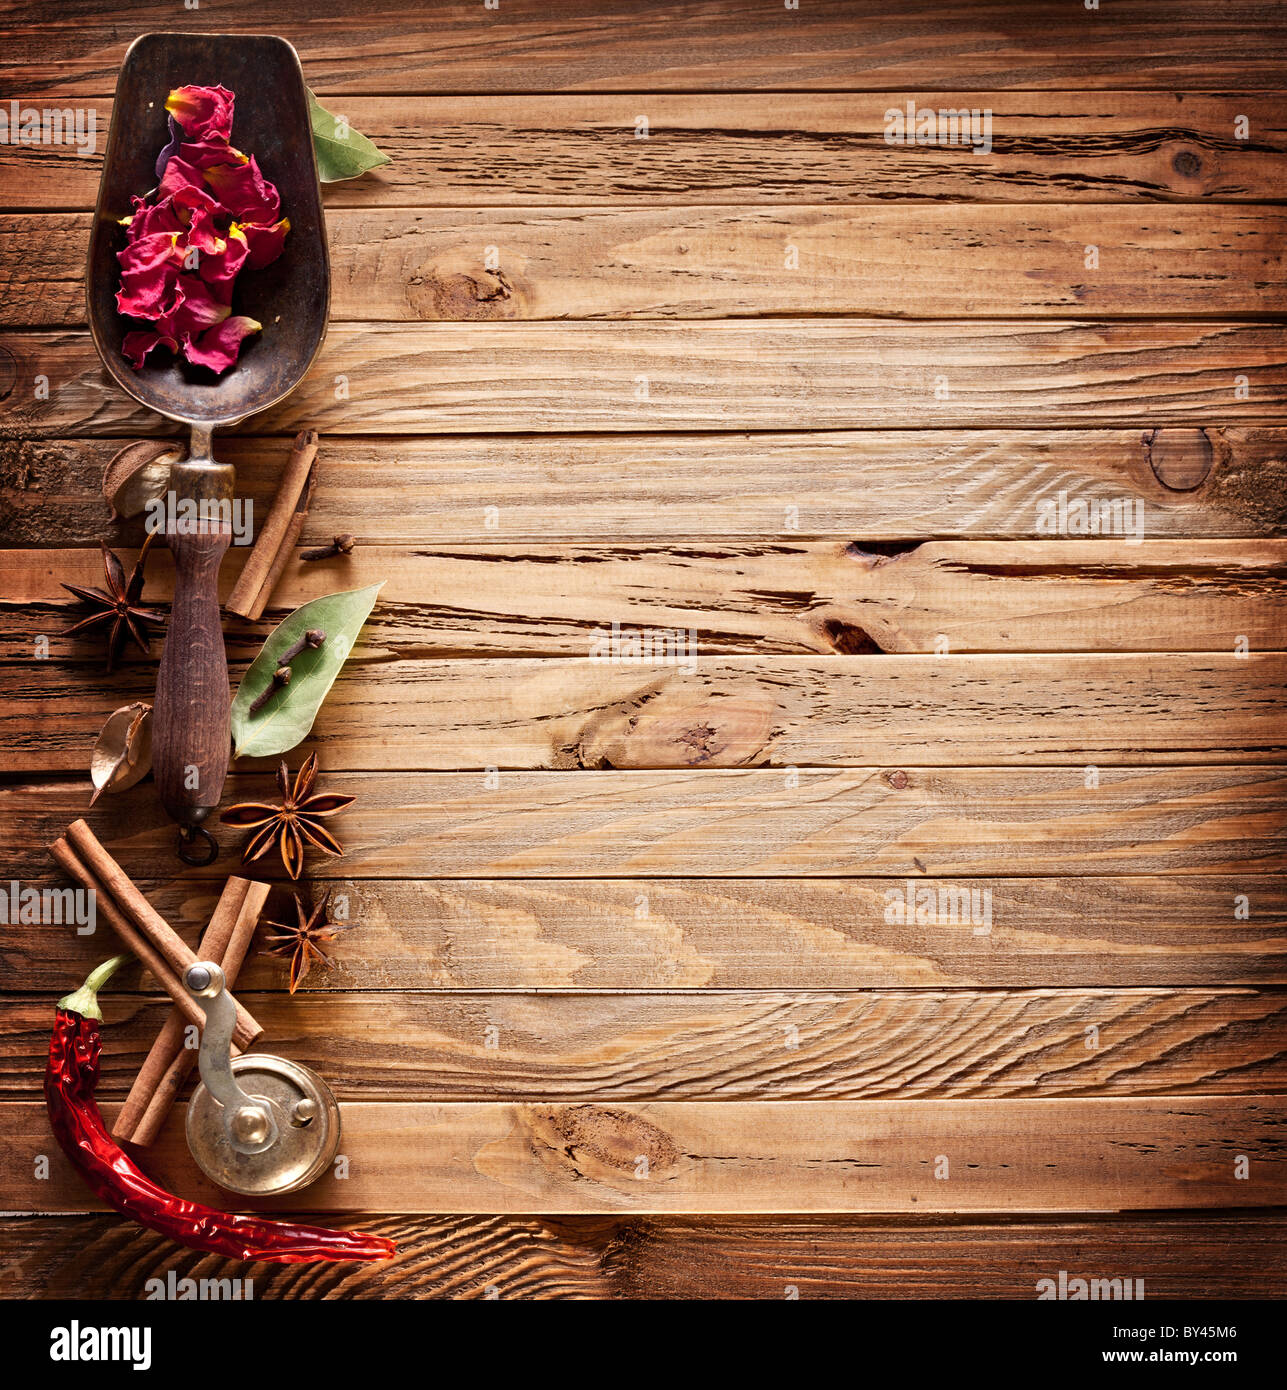 Bildstruktur von alten Holzbrettern mit Küche Gewürze. Stockfoto